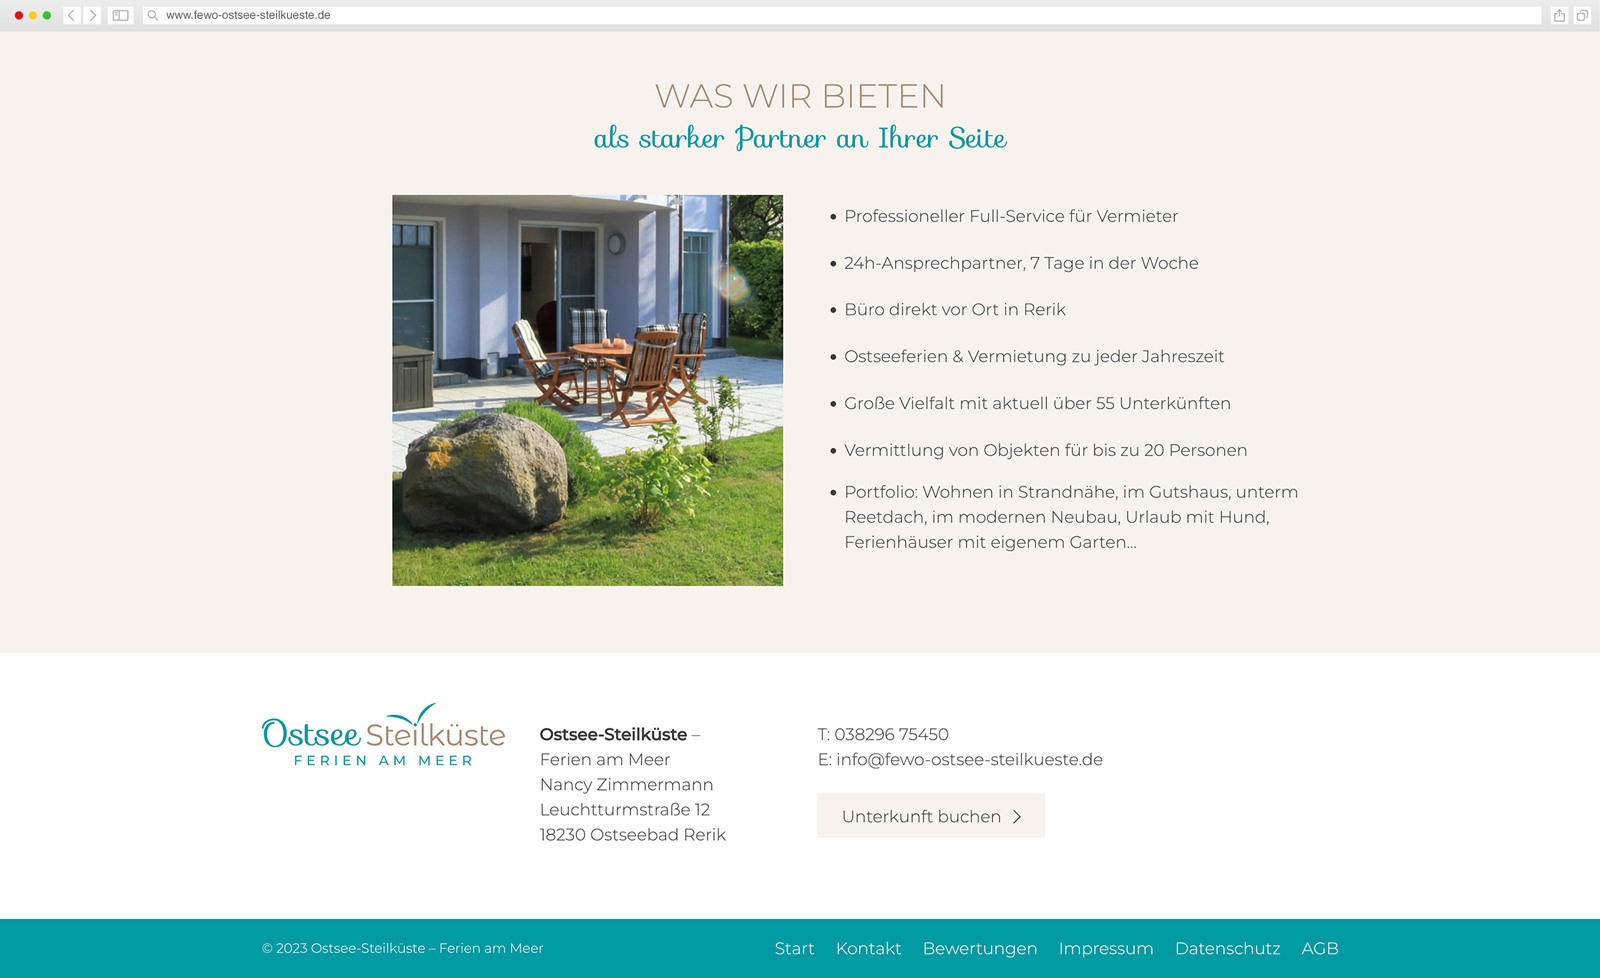 Ostsee_Steilküste-Web_Screen-1